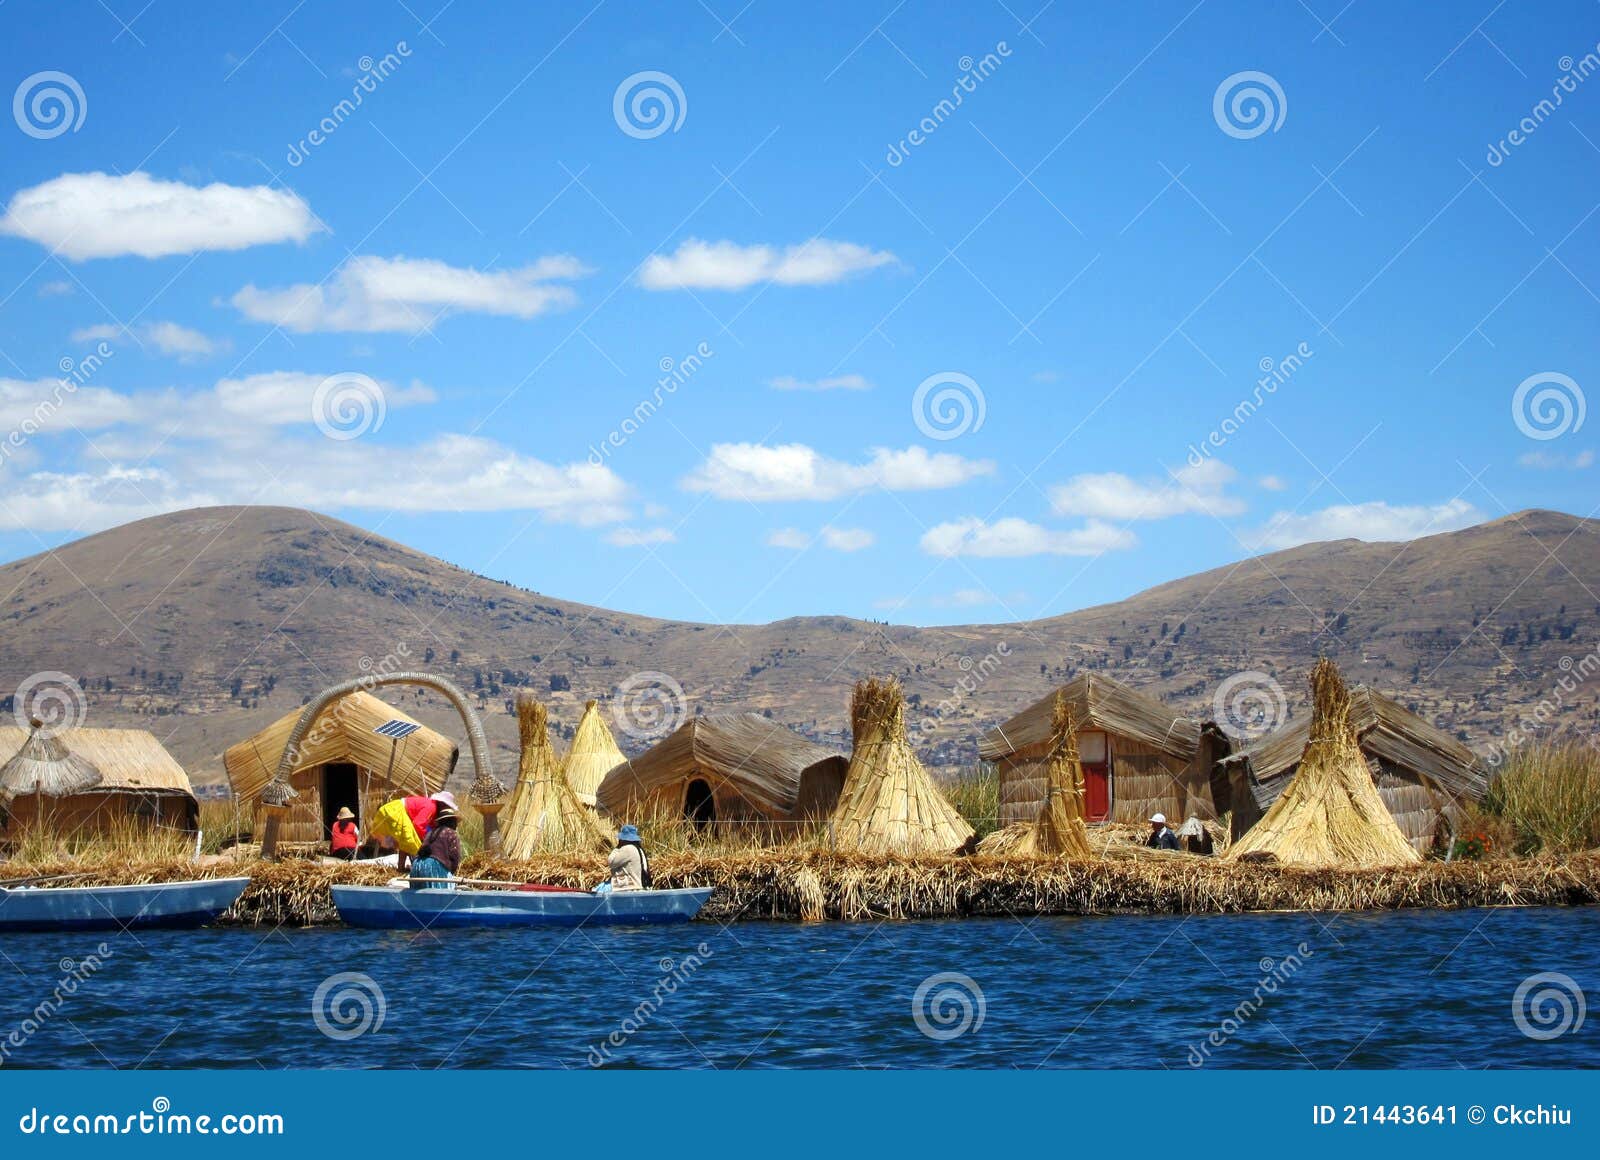 uros floating islands at titicaca, peru